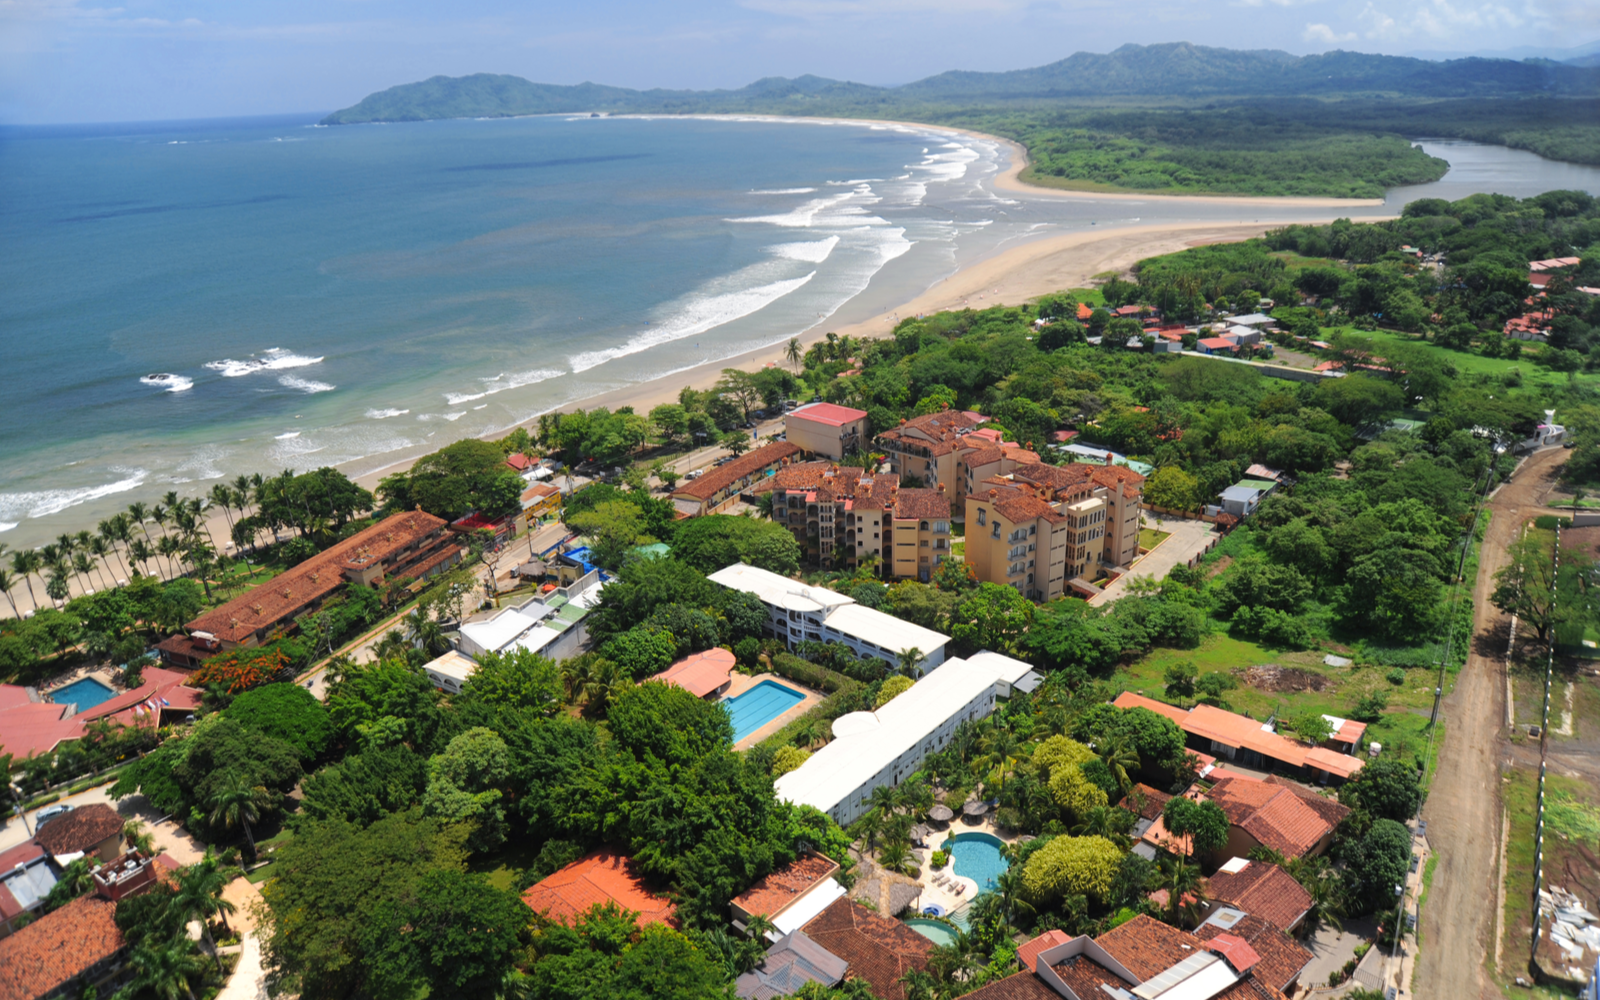 15 Best All-Inclusive Resorts in Costa Rica in 2023